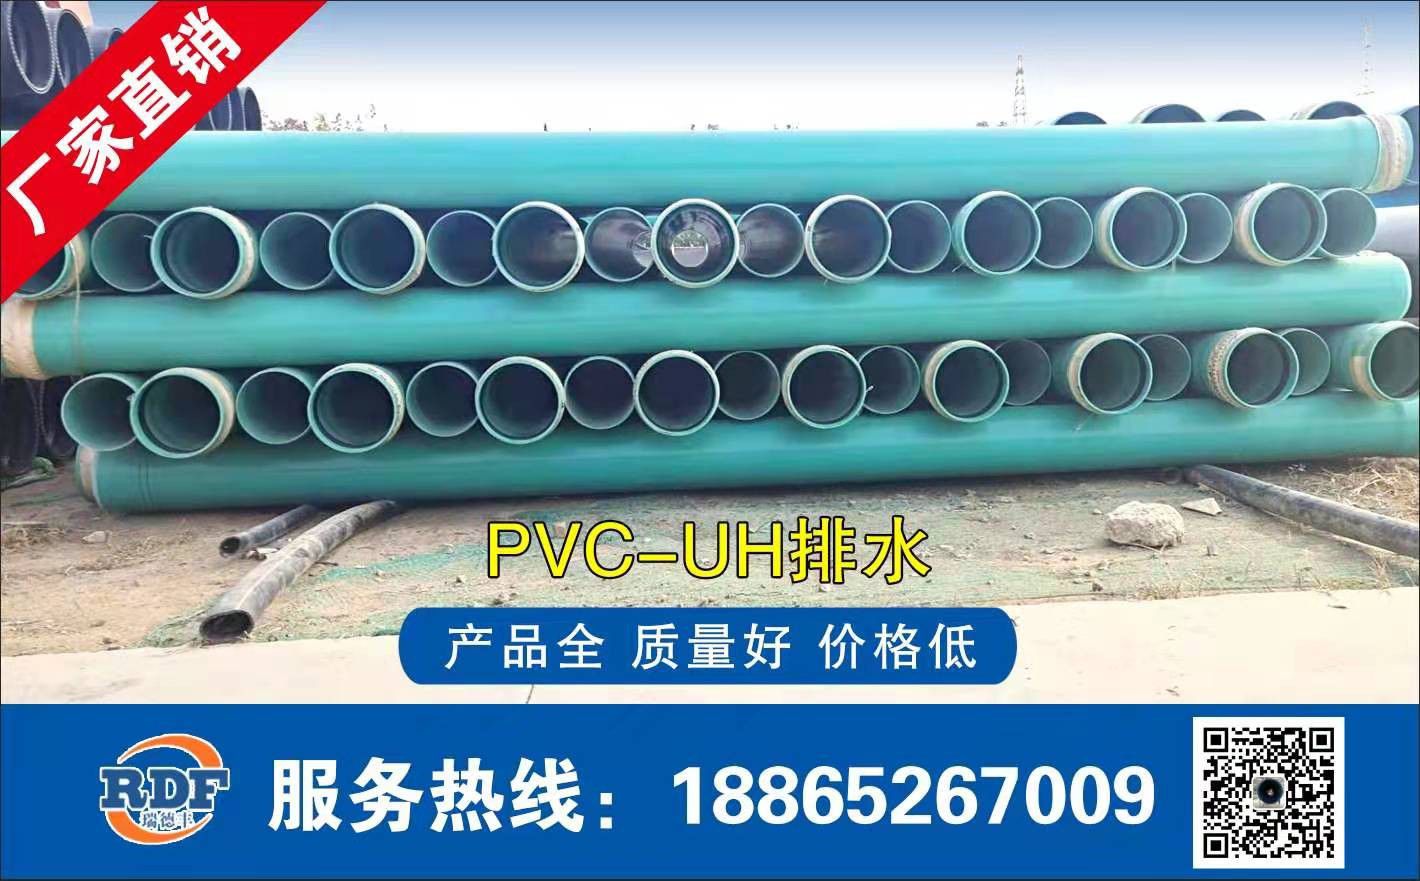 芜湖南陵县PVC中空壁管烟台价格暂稳出货依旧般